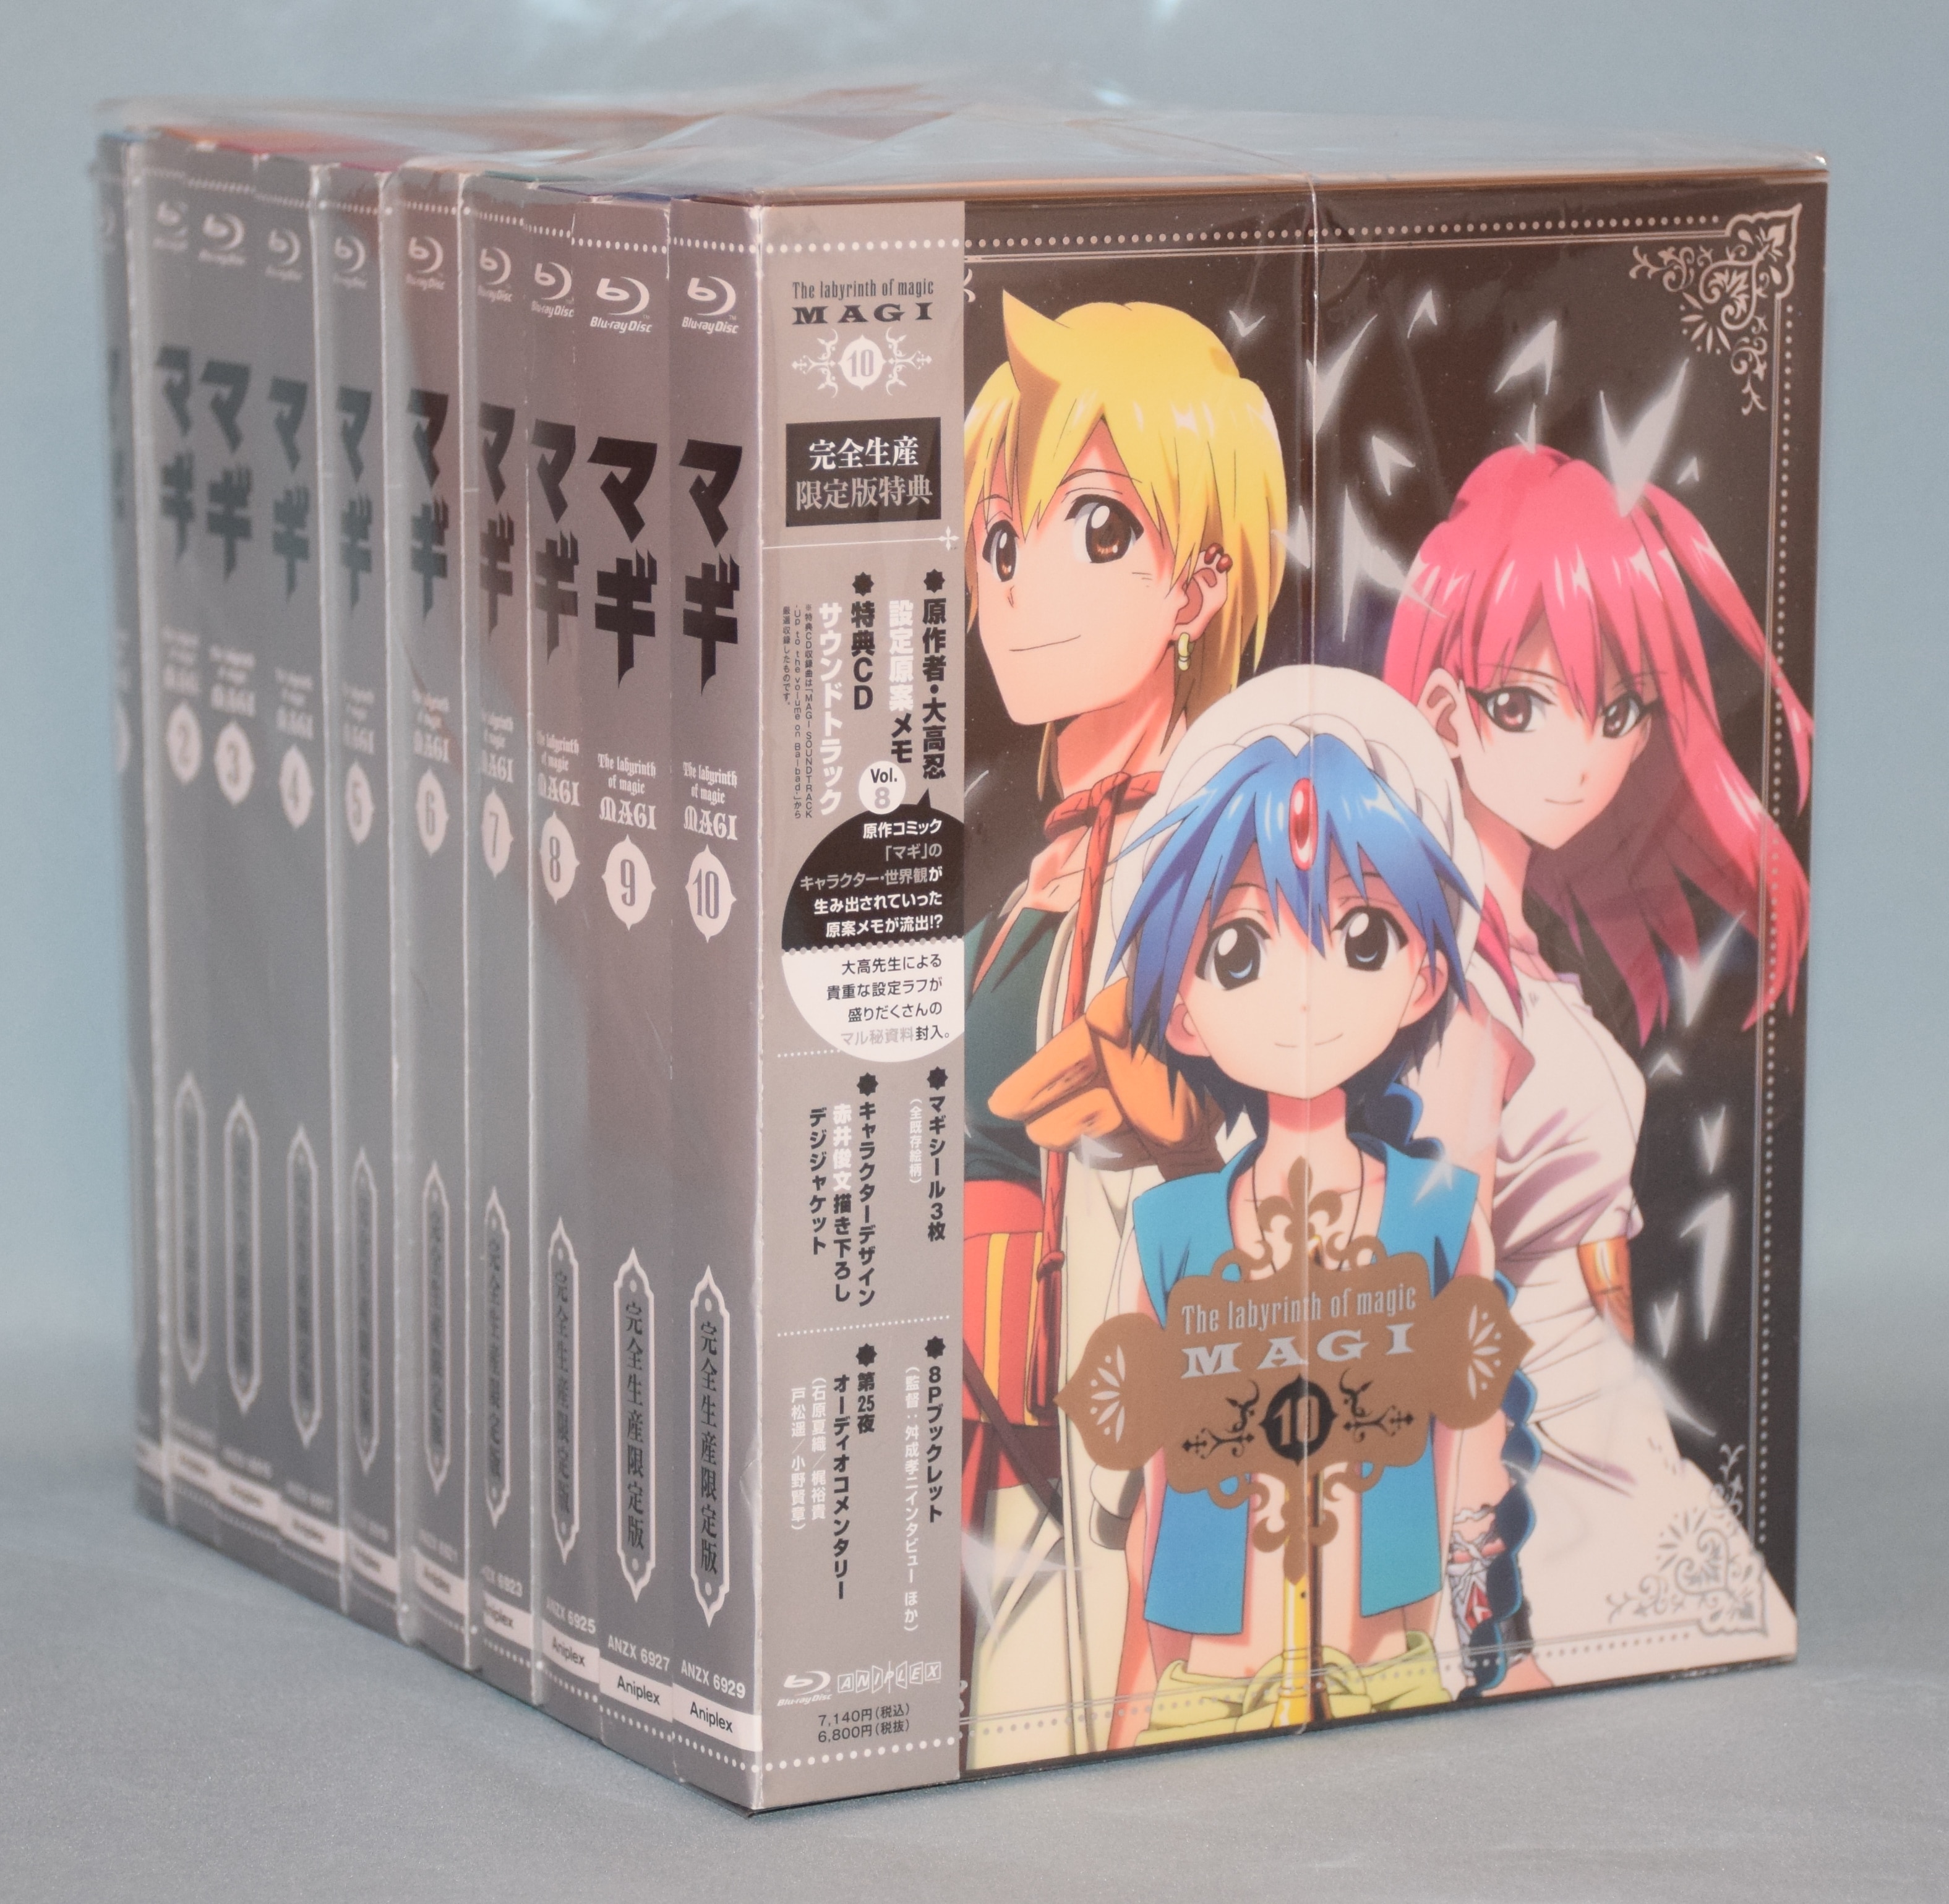 マギ MAGI 完全生産限定版 DVD 全10巻セット 収納BOX付 - アニメ